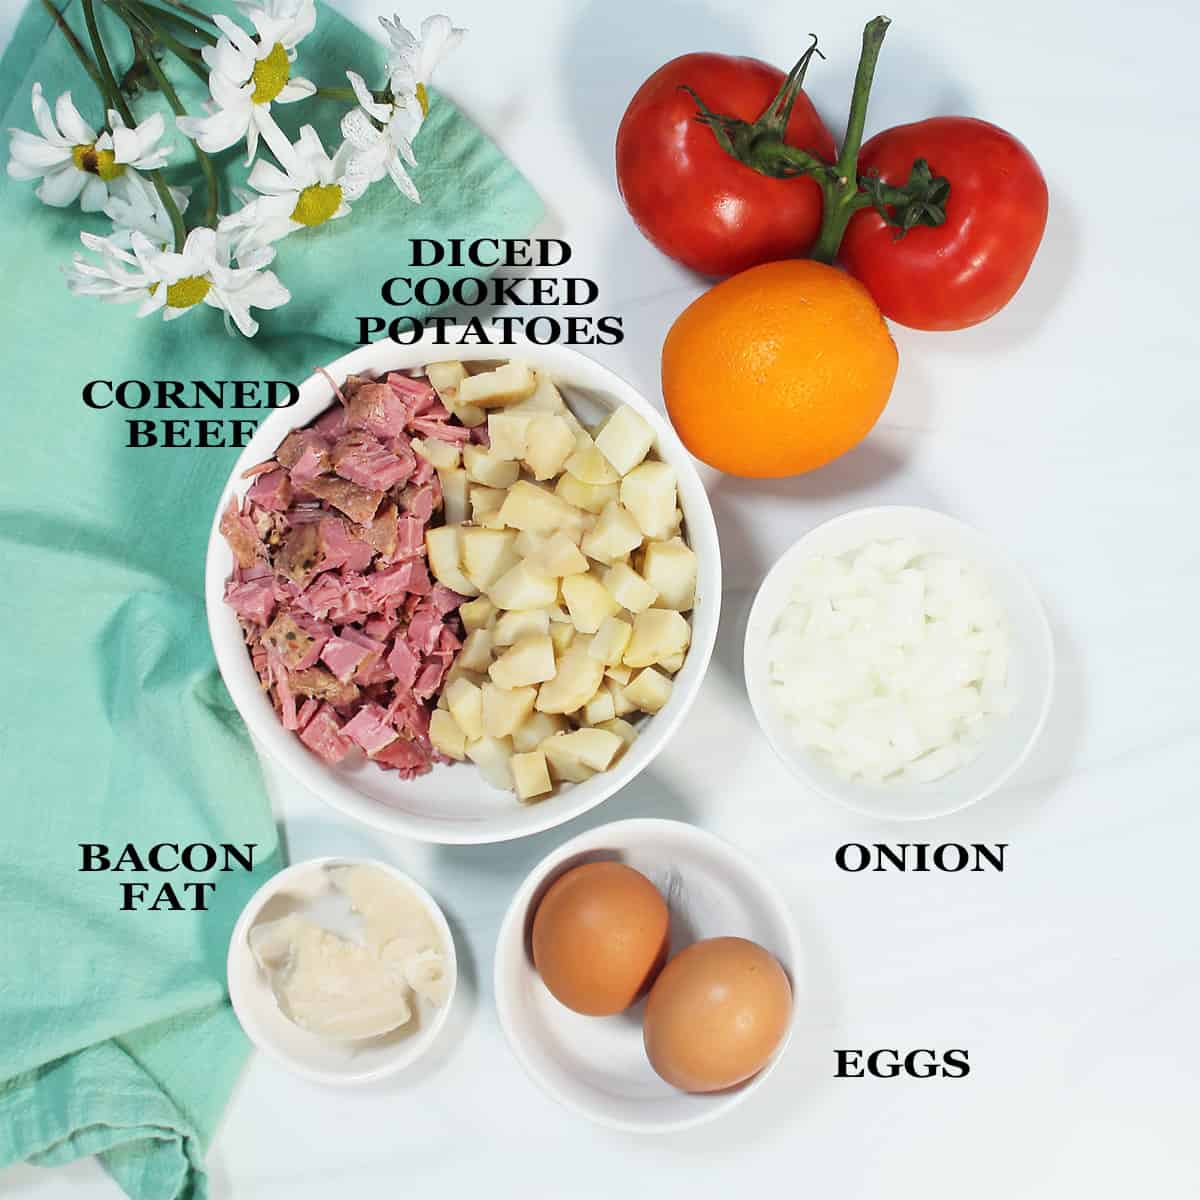 Ingredients for corned beef hash breakfast.